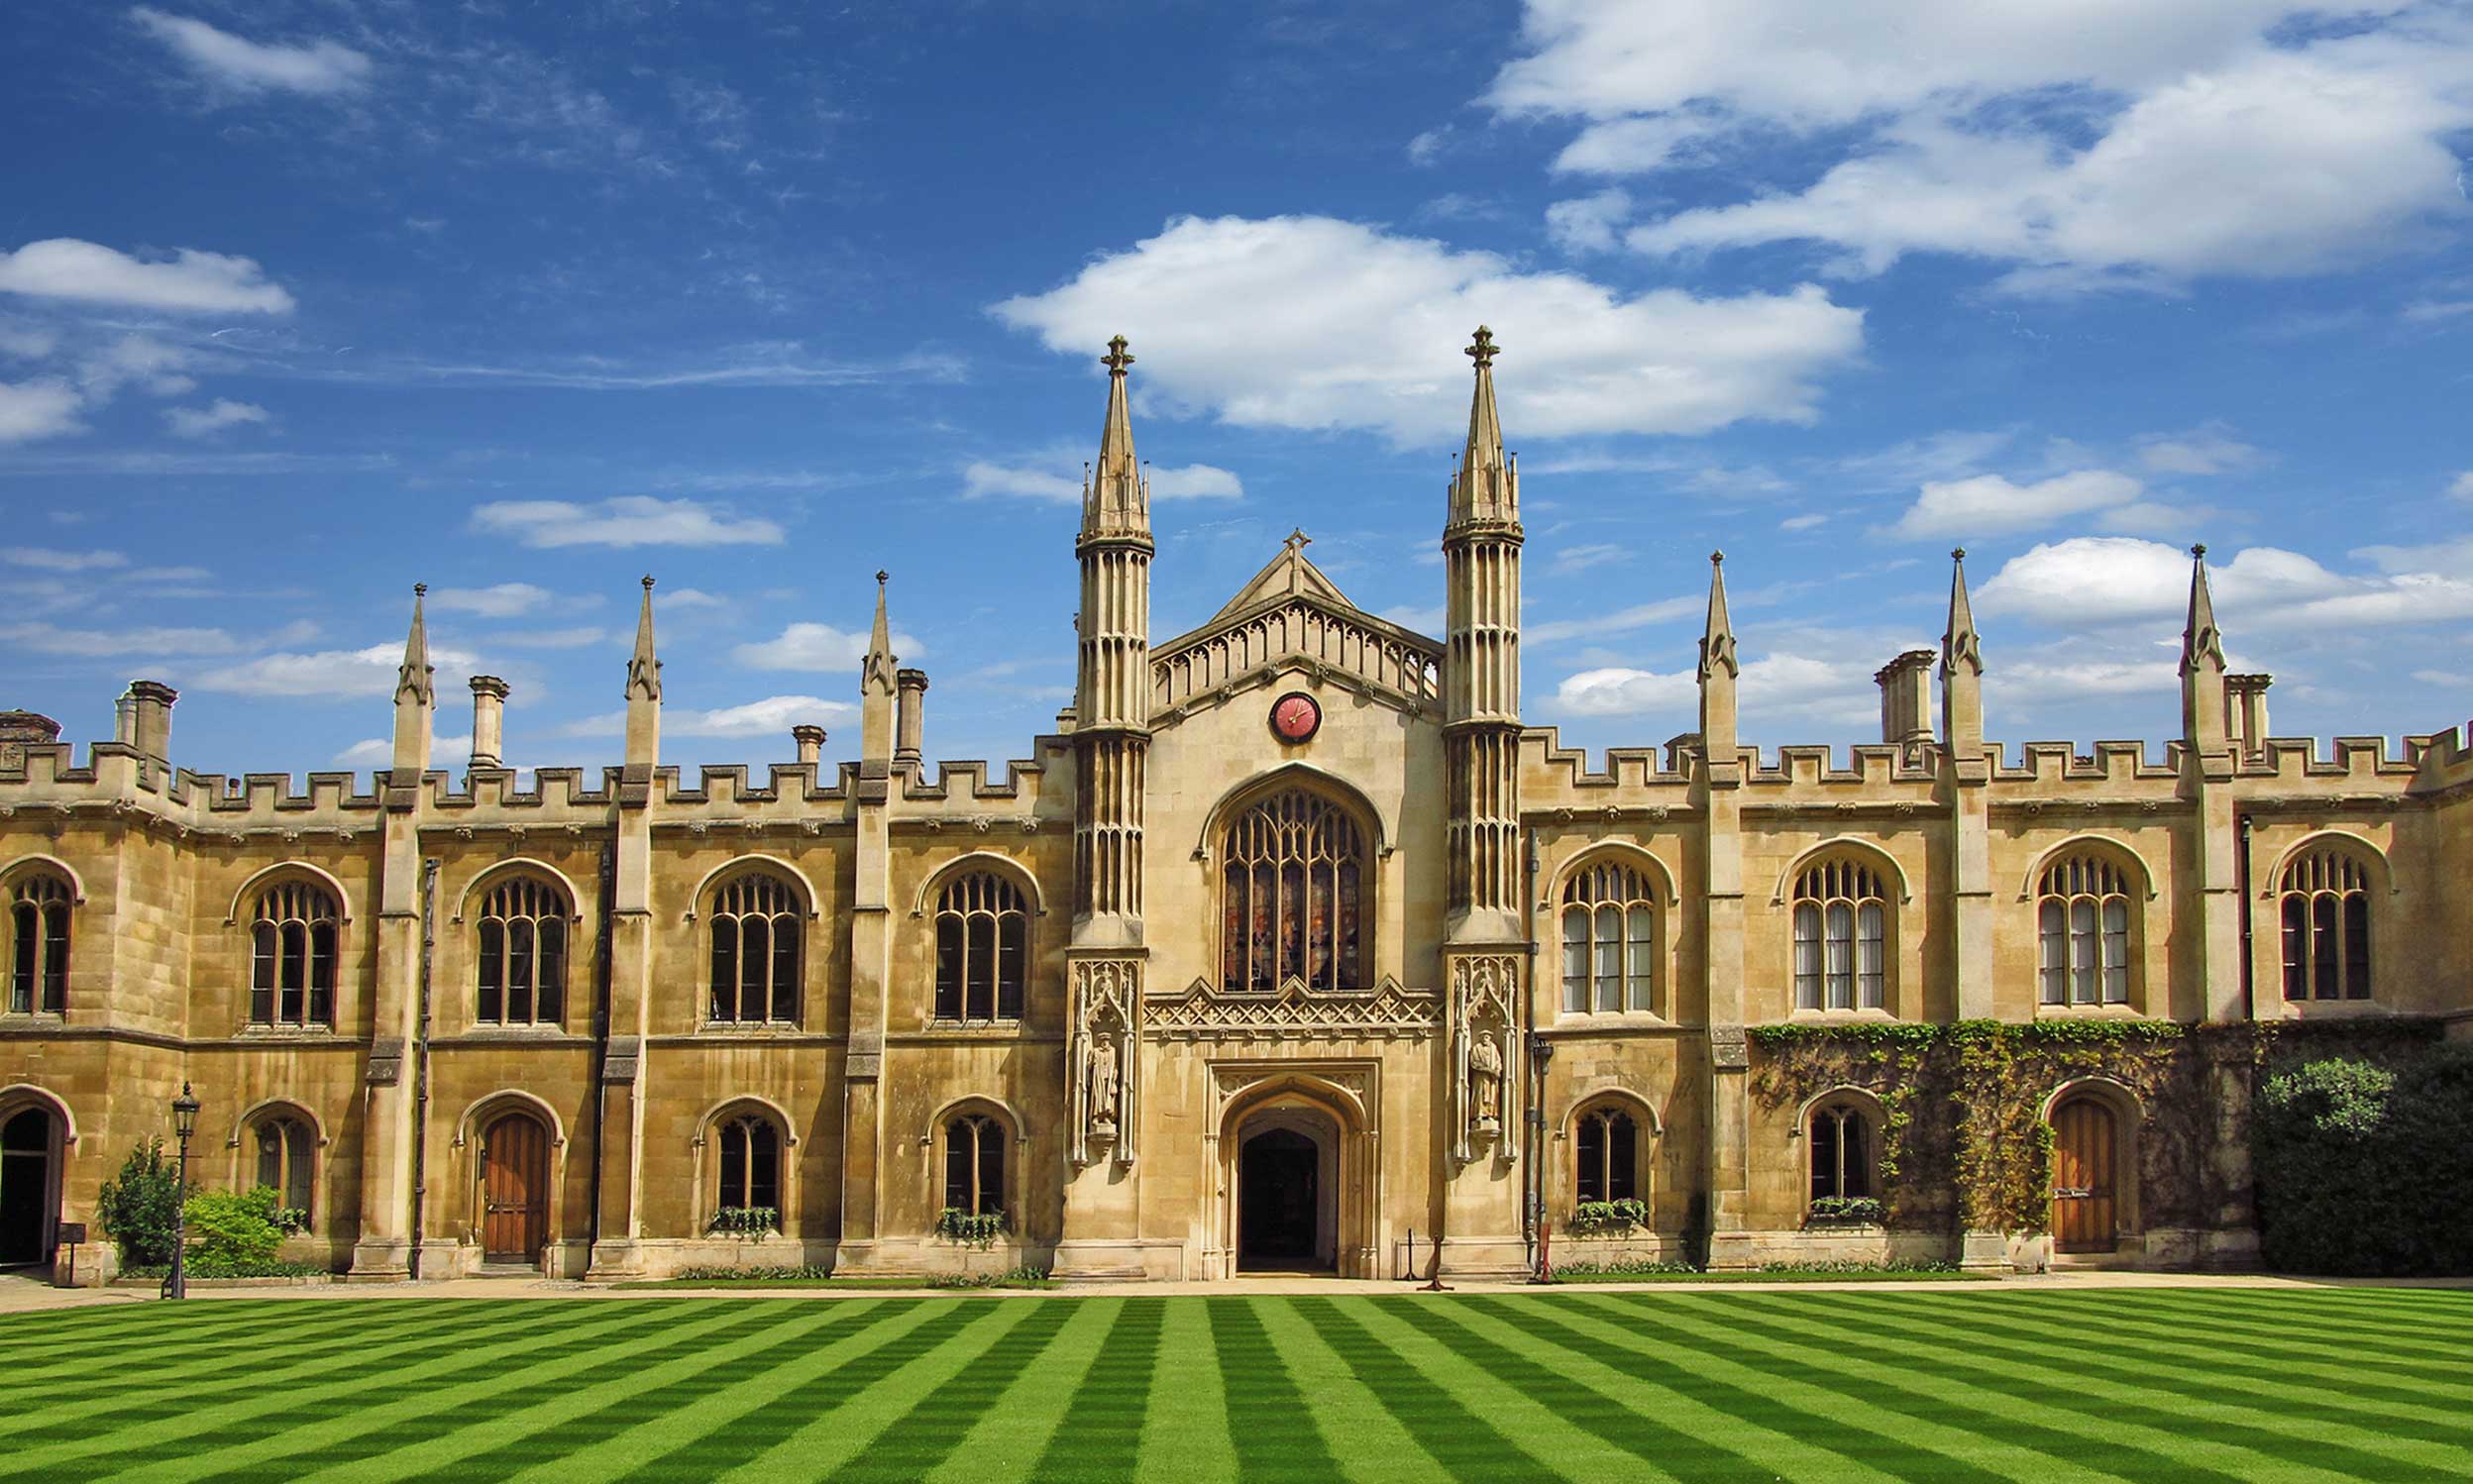 Consortium on Asset Management in Cambridge